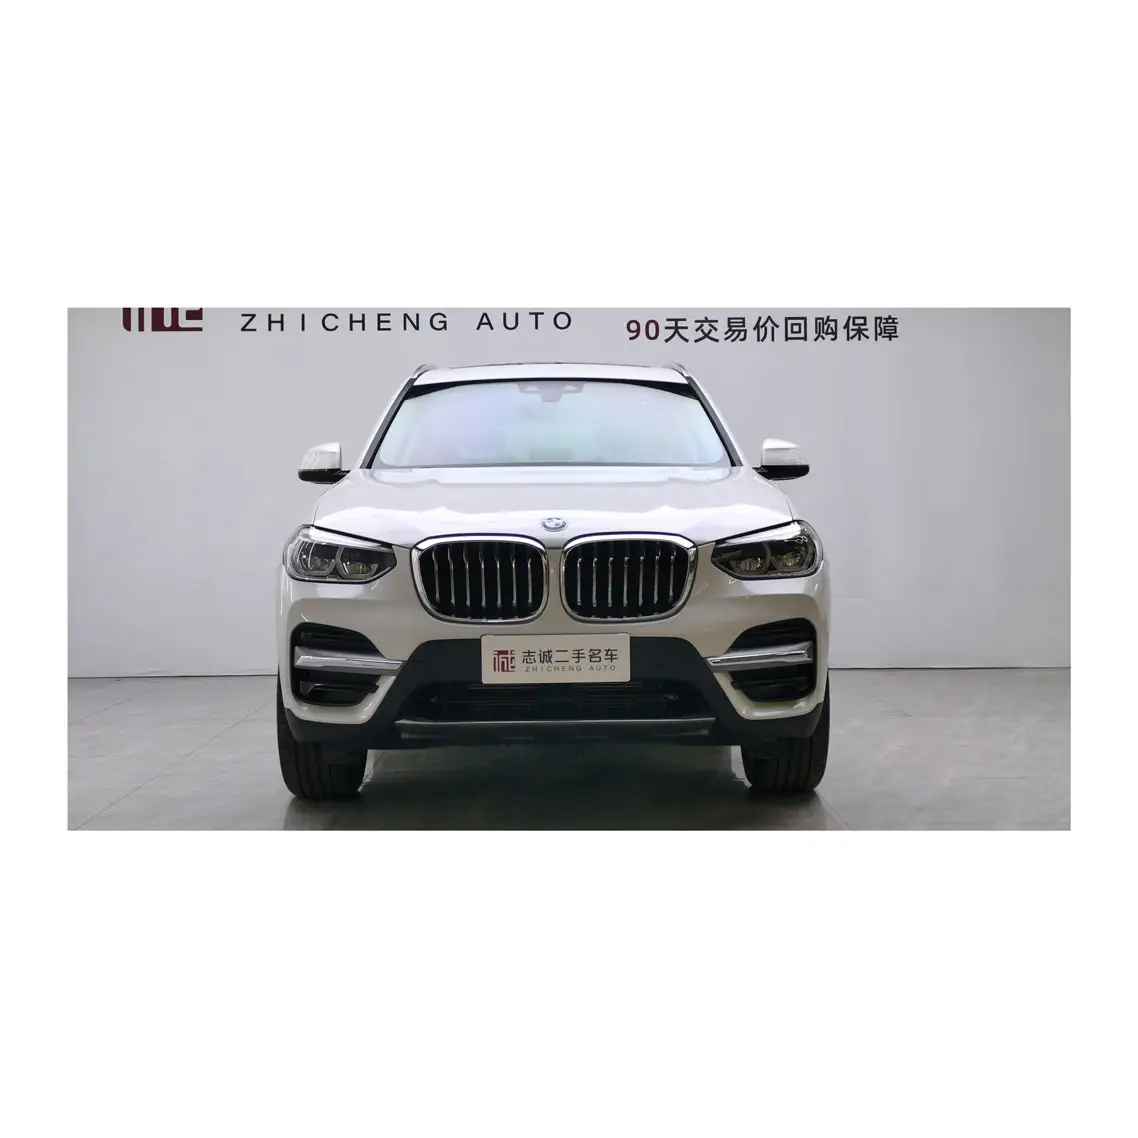 BMW X3 внедорожник Подержанный автомобиль роскошный внедорожник Bmw X3 2021 подержанные автомобили горячая распродажа Спорт AWD автоматический (депозит)